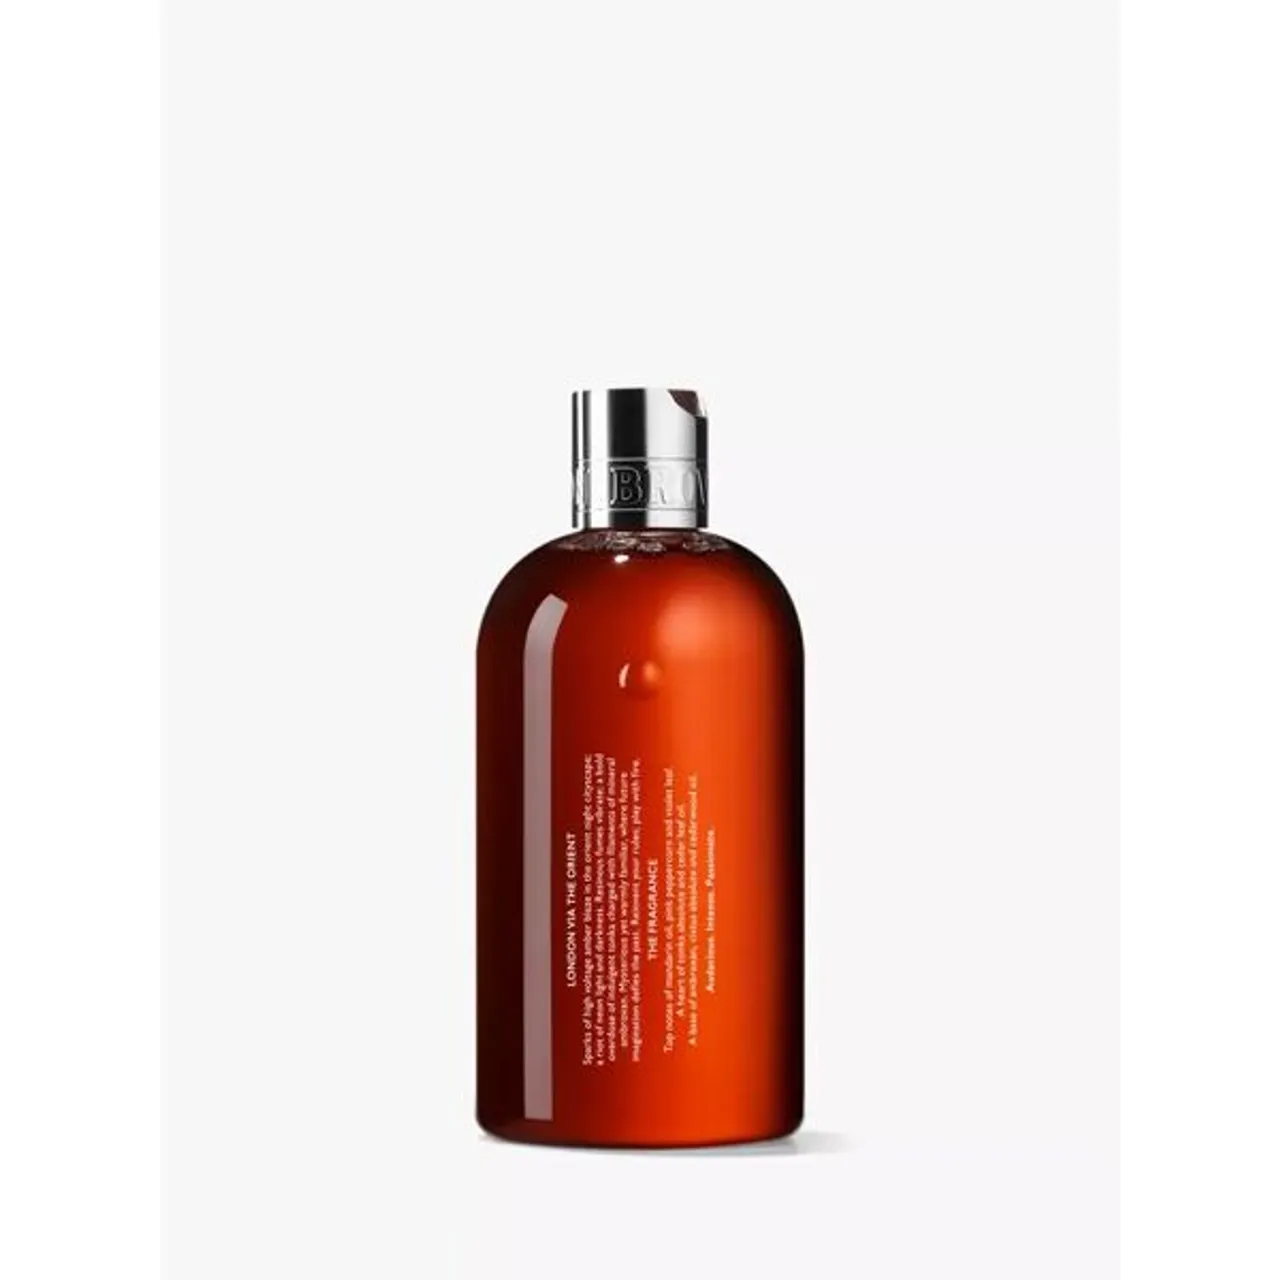 Molton Brown Neon Amber Bath & Shower Gel, 300ml - Unisex - Size: 300ml